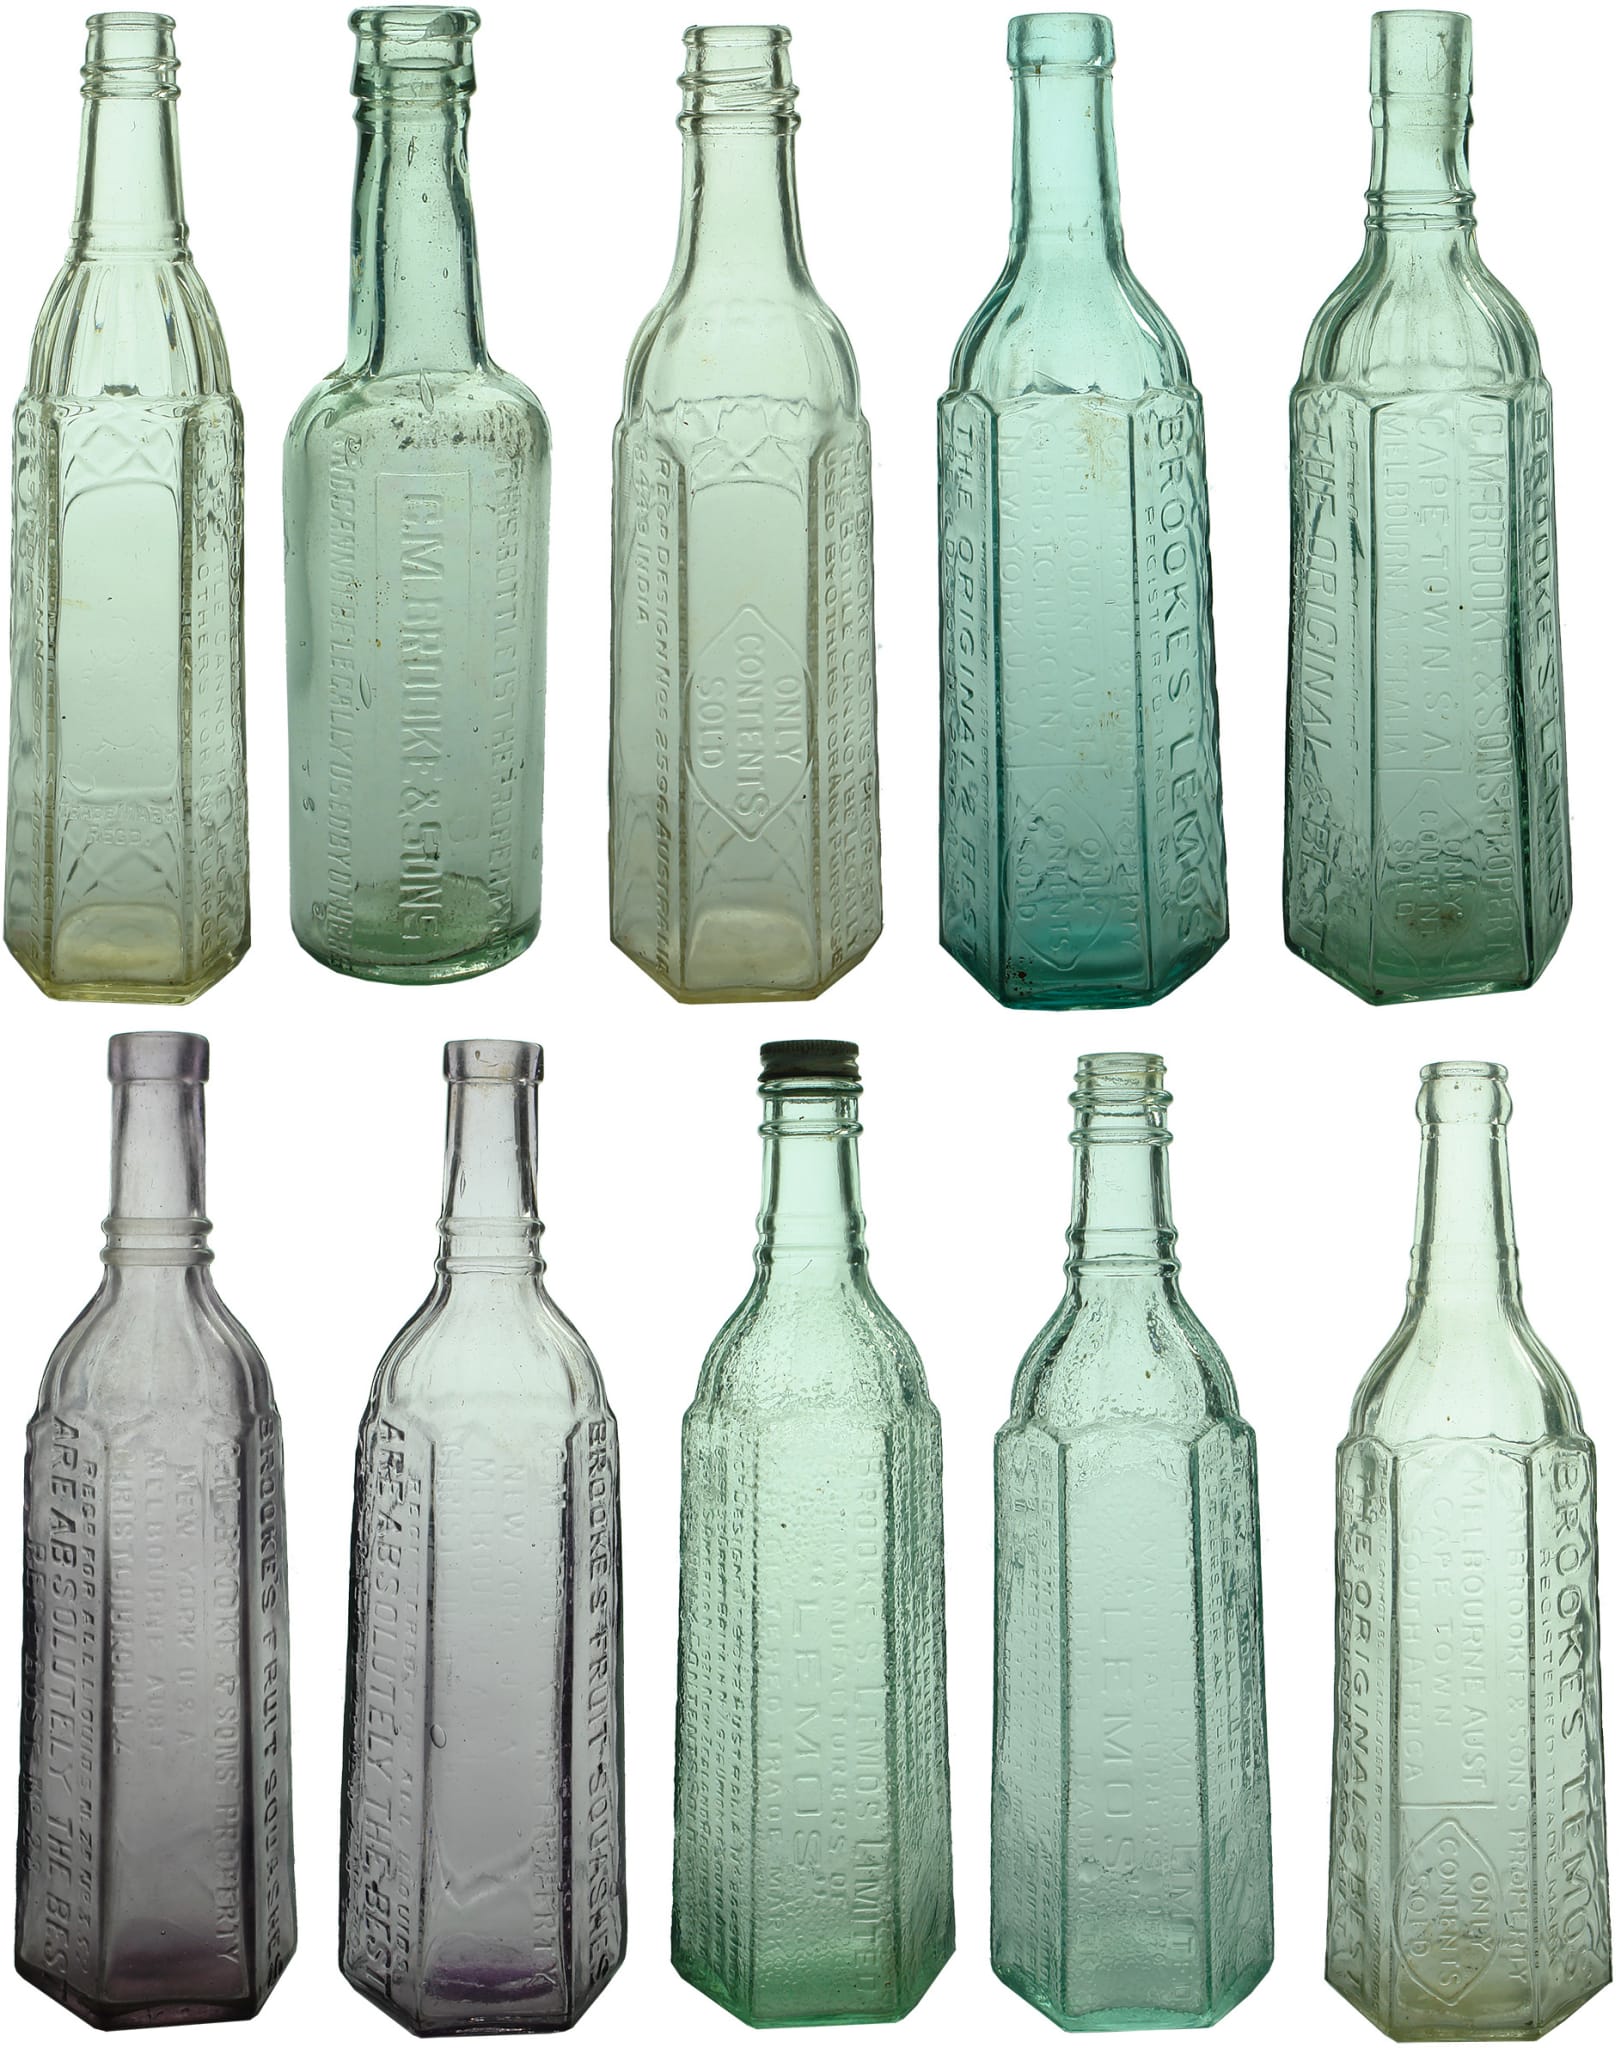 Brookes Lemos Squash Antique Vintage Cordial Bottles - ABCR Auctions